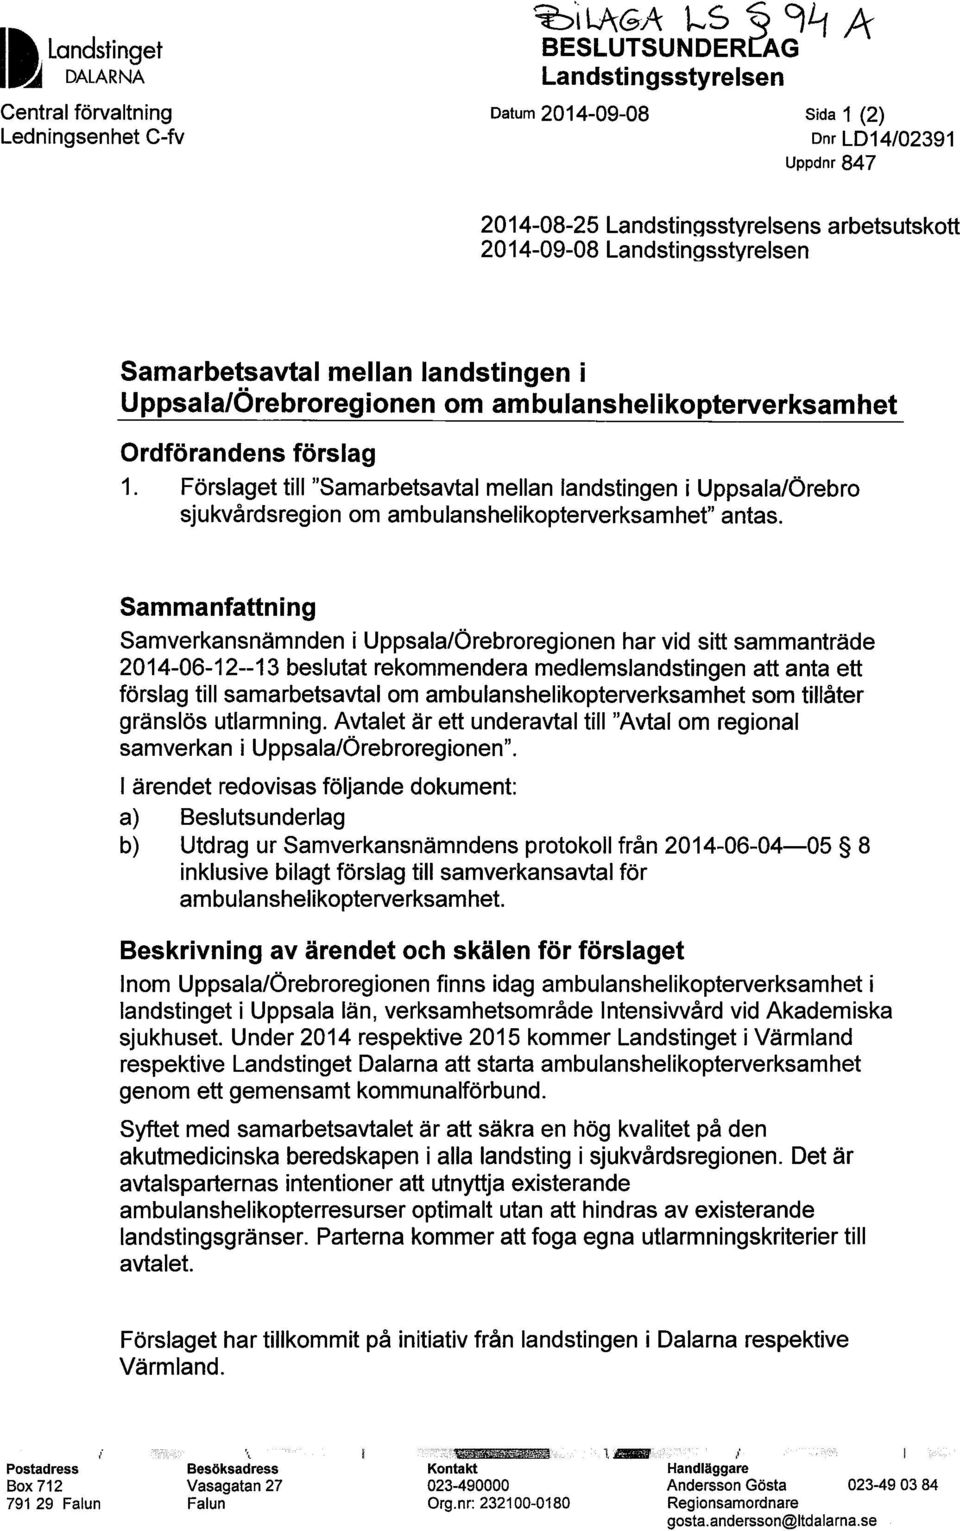 Förslaget till "Samarbetsavtal mellan landstingen i Uppsala/Örebro sjukvårdsregion om ambulanshelikopterverksamhet" antas.